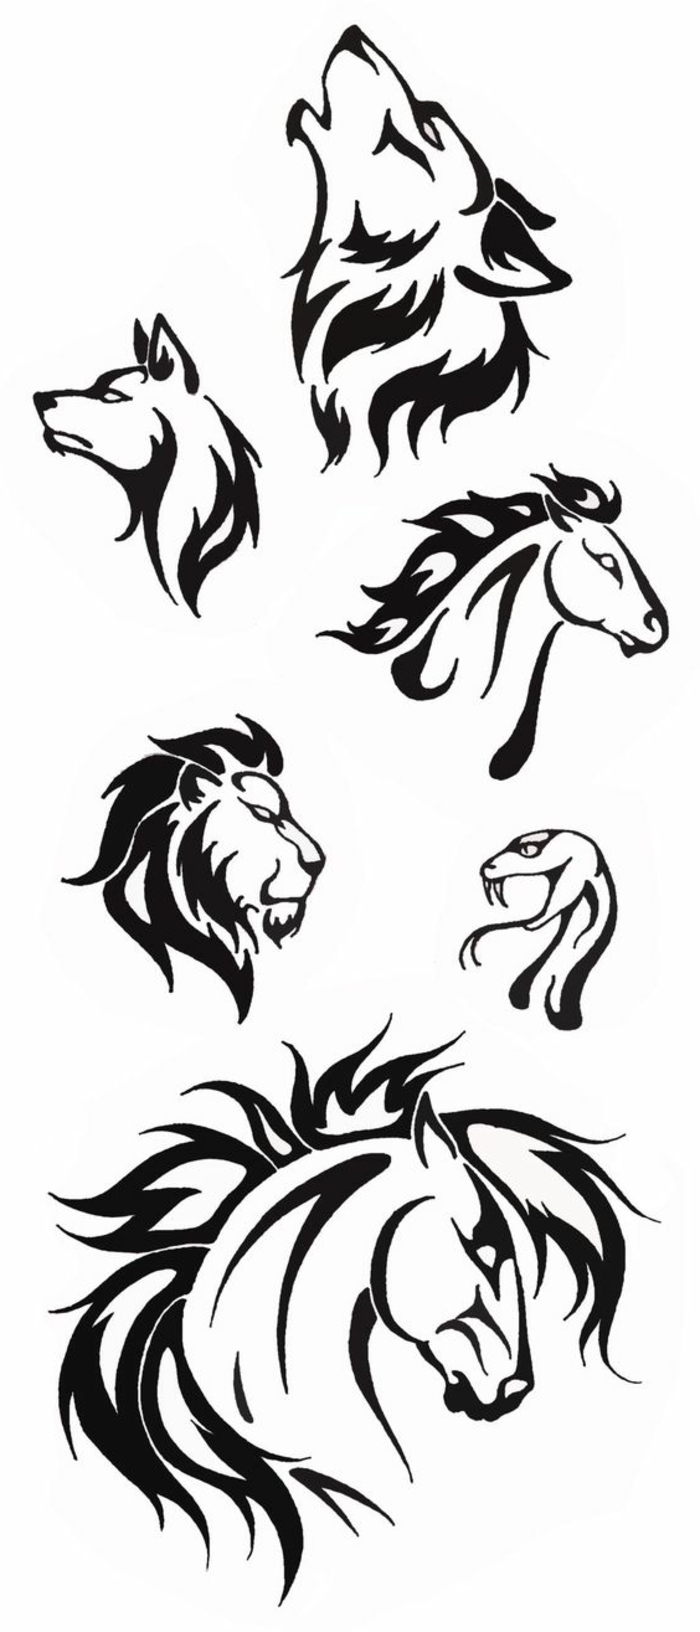 Ovdje vam pokazujemo različite ideje za crne tetovaže - vukove, lavove, dva konja i zmiju